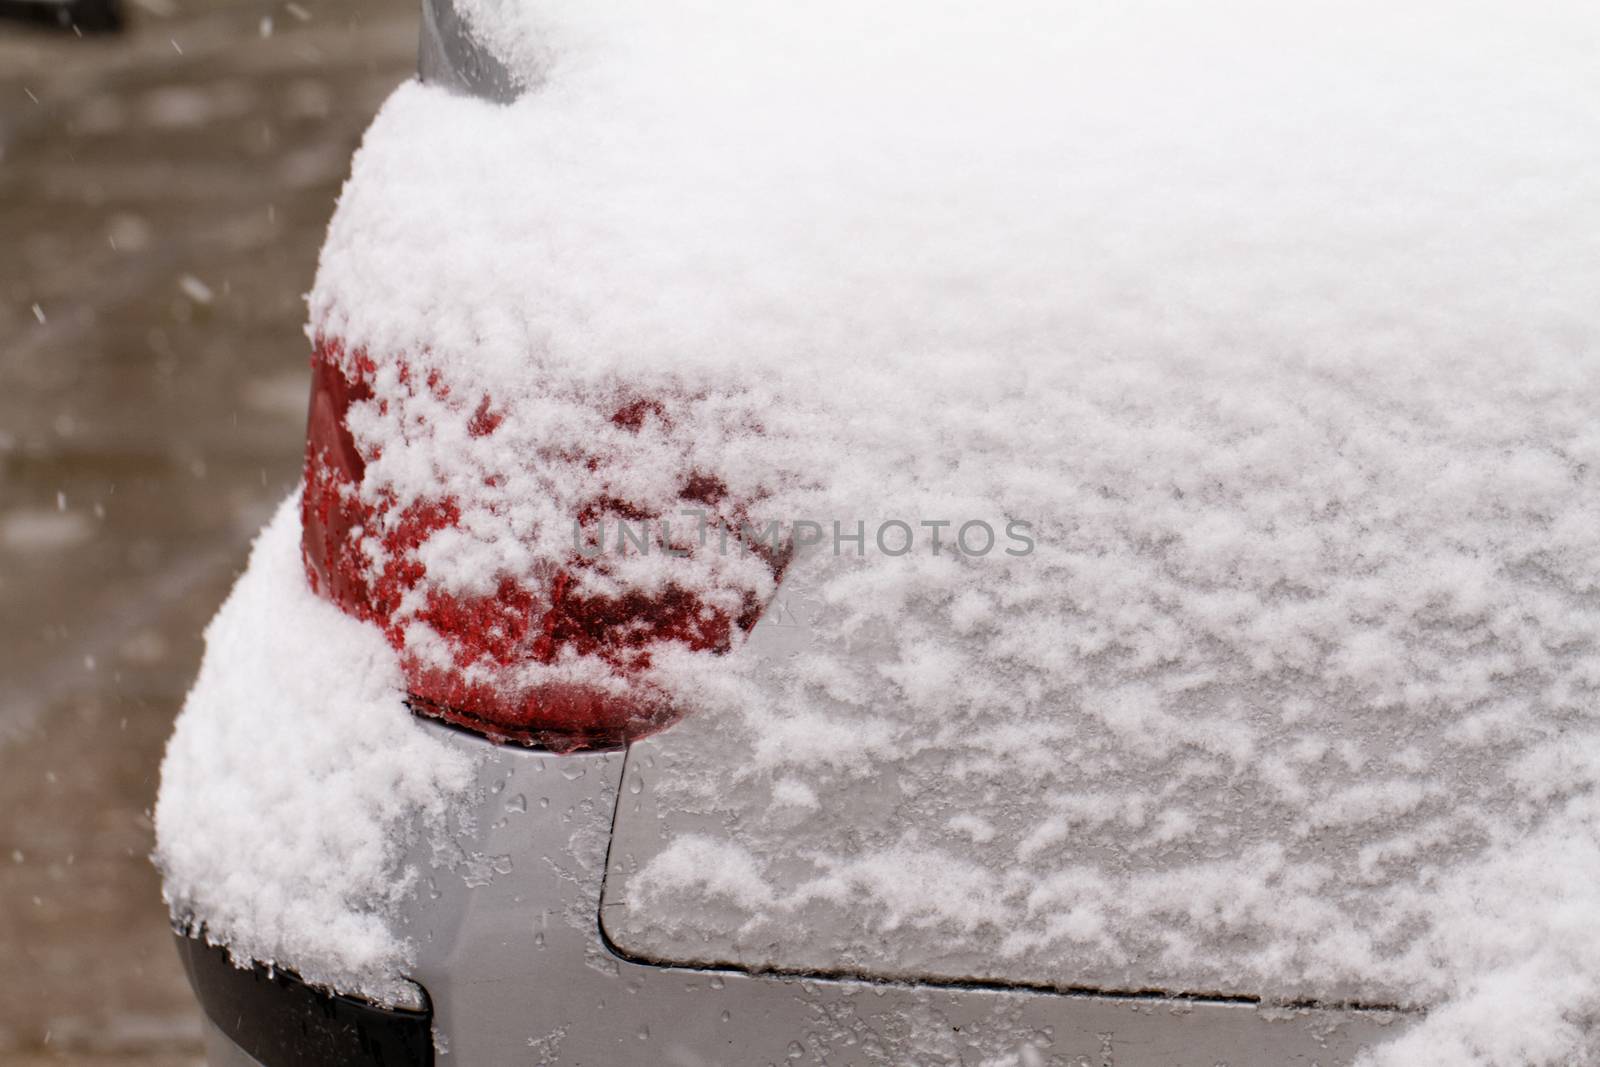 Photo of a snowy car's snowy headlight 